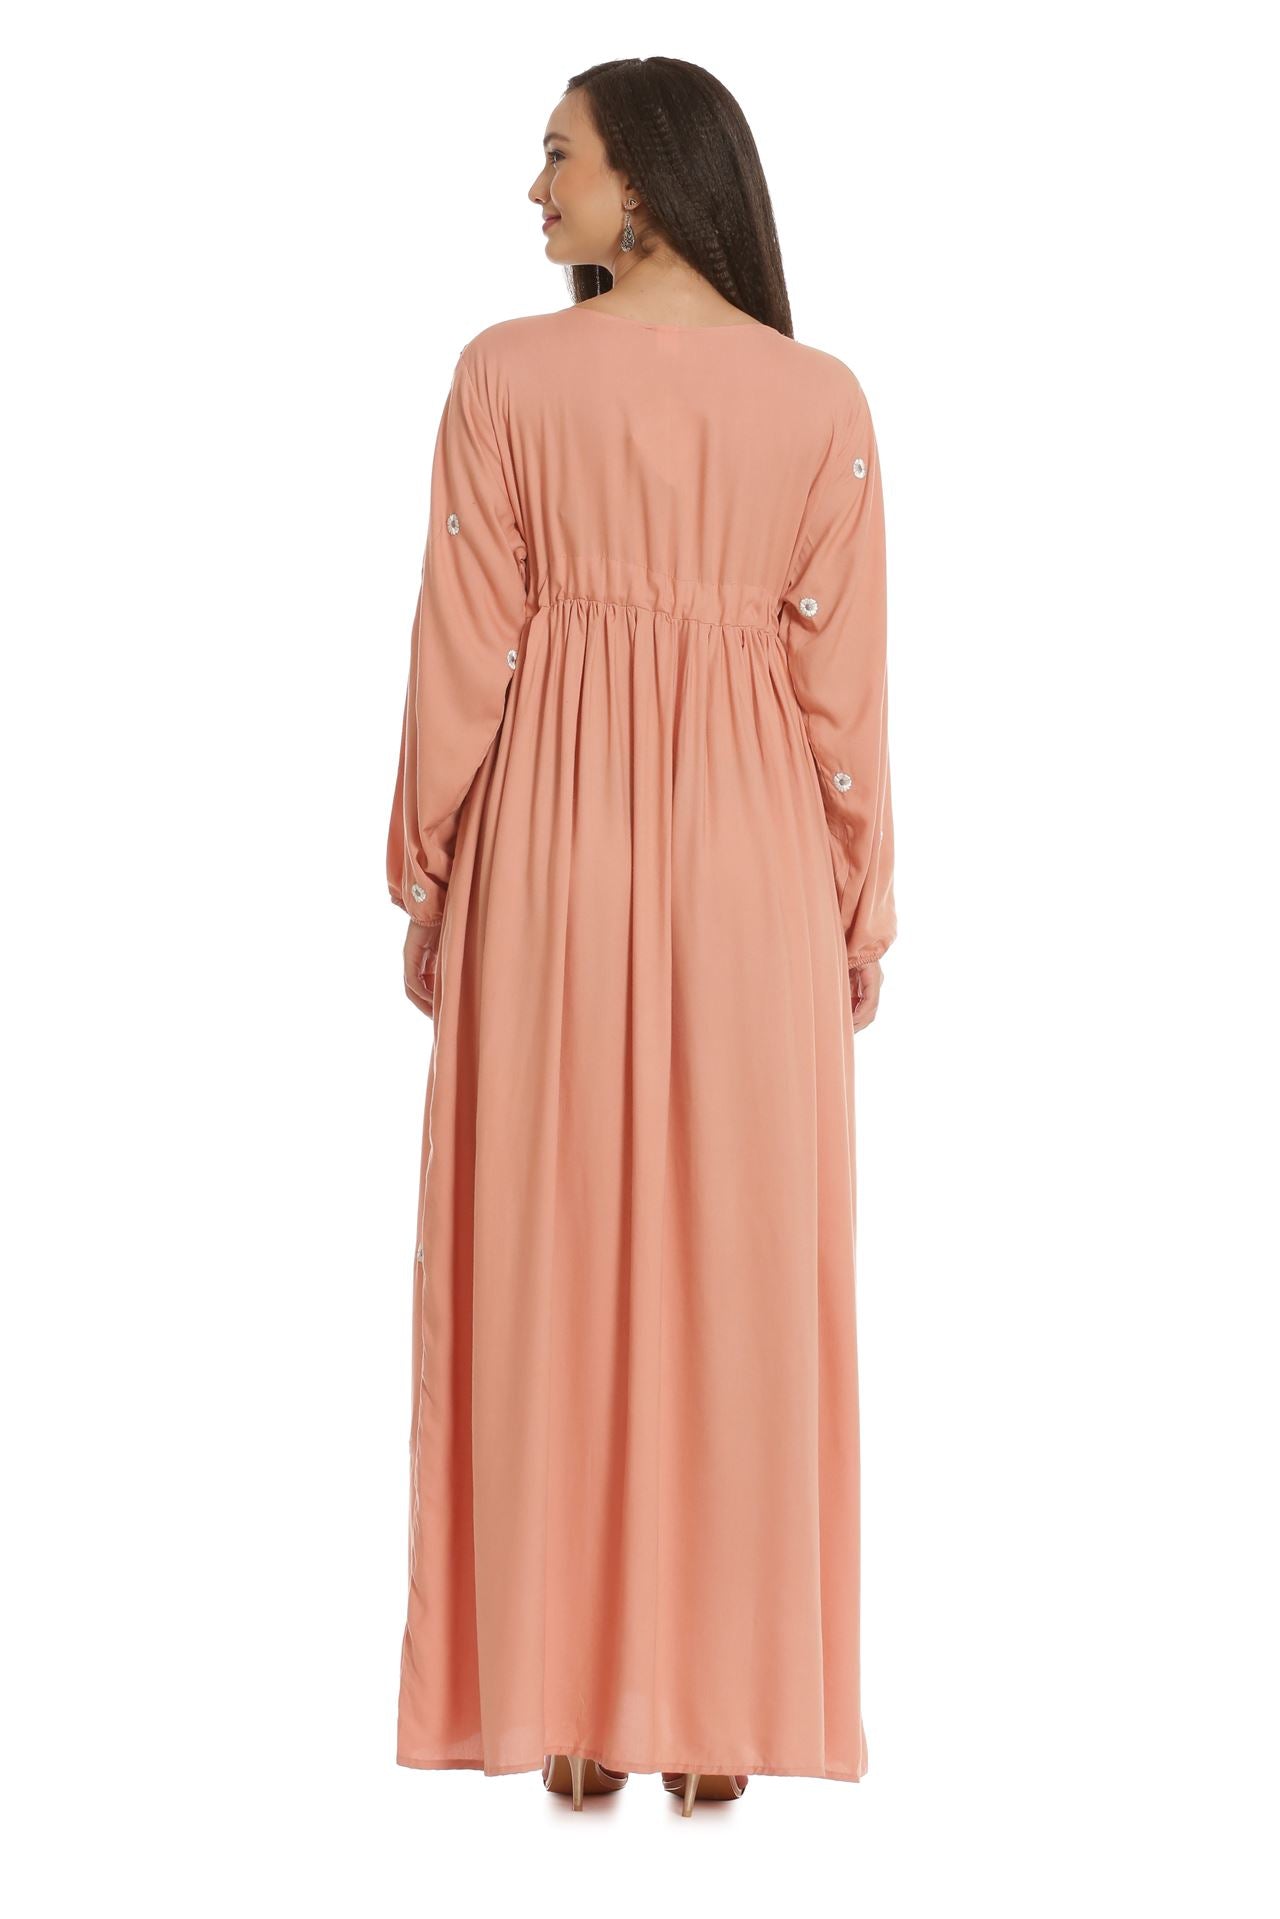 Arabian Casual Maxi Gown - Maxim Creation